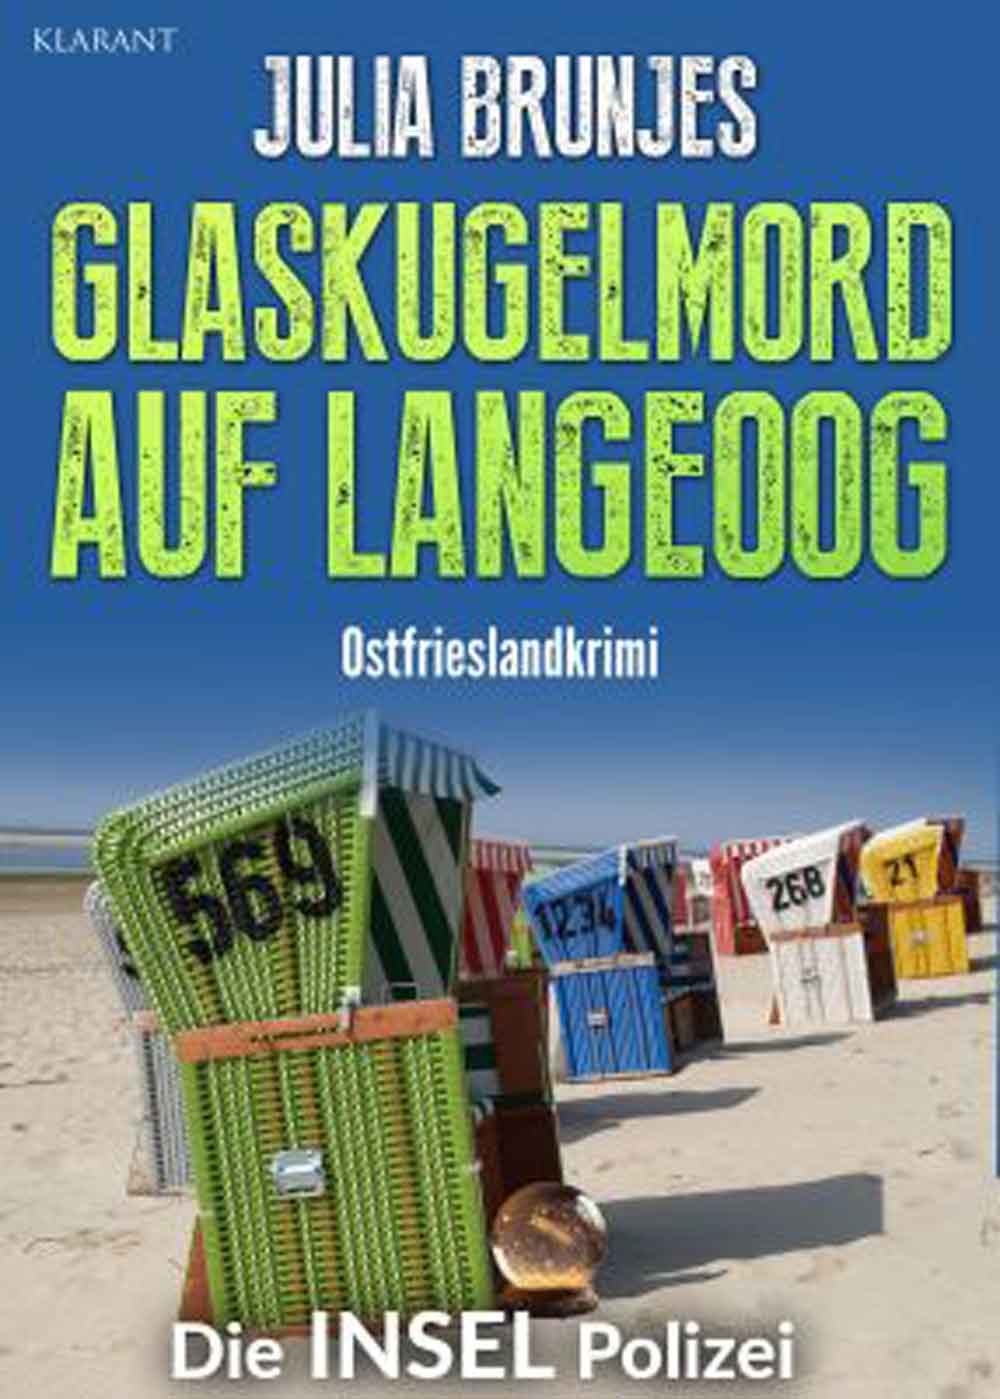 Lesetipps für Gütersloh: Ostfrieslandkrimi »Glaskugelmord auf Langeoog« von Julia Brunjes im Klarant Verlag